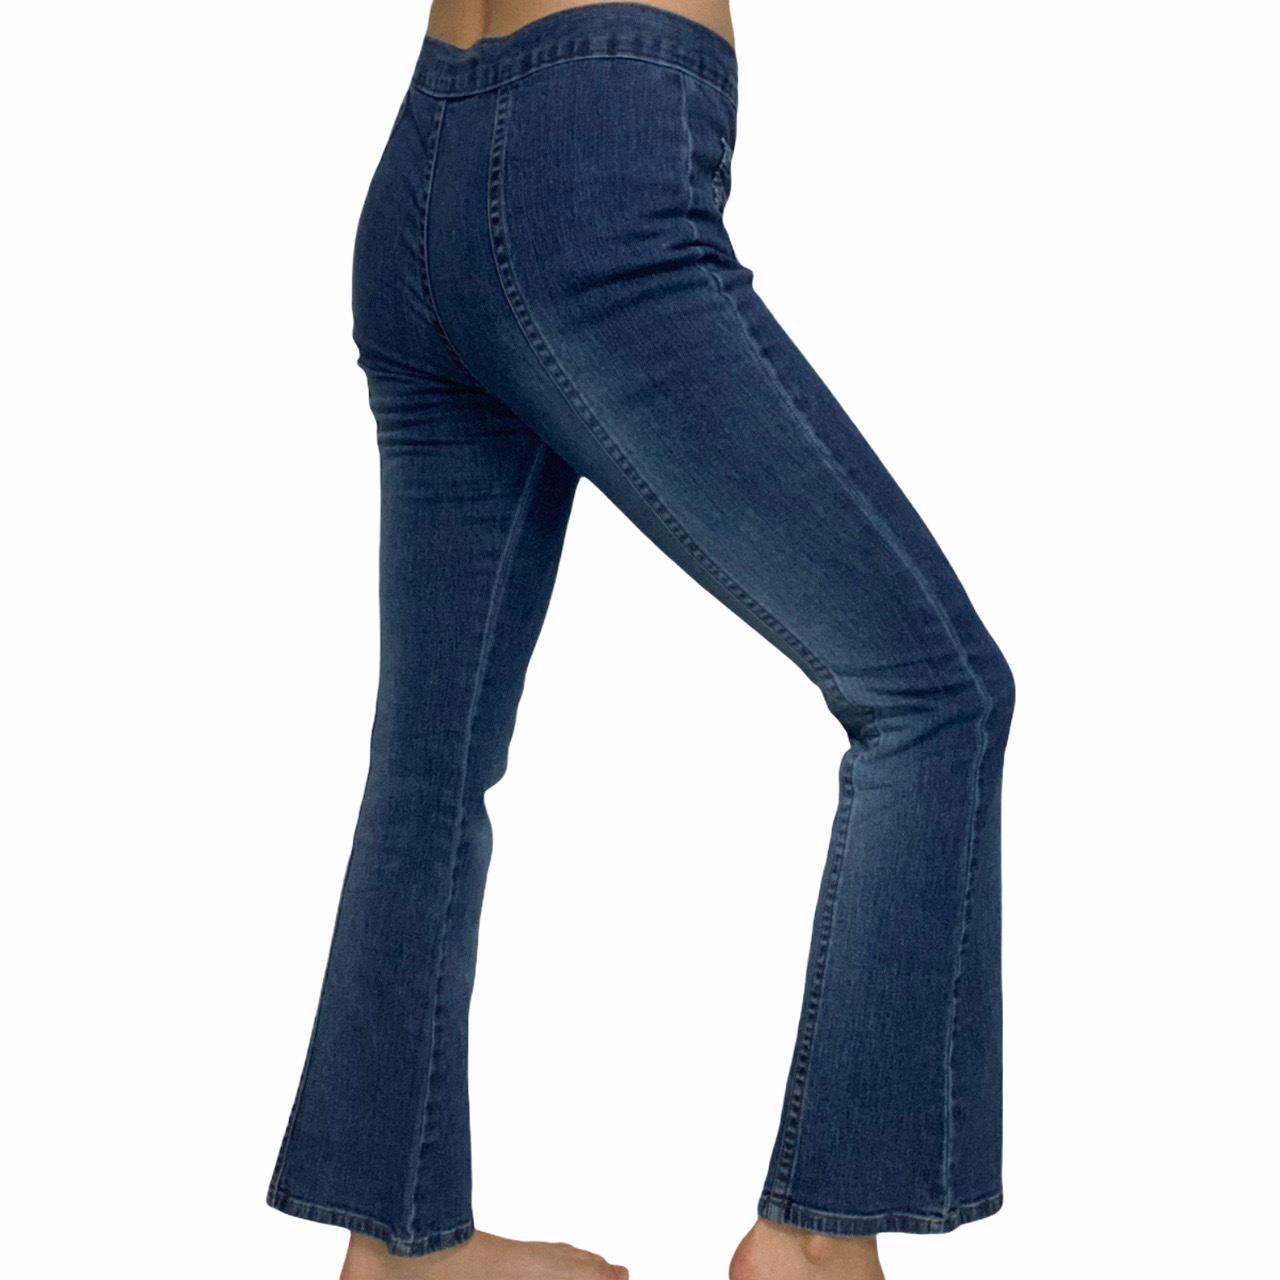 Vintage Guess Flare Jeans No back pockets Size 16... - Depop